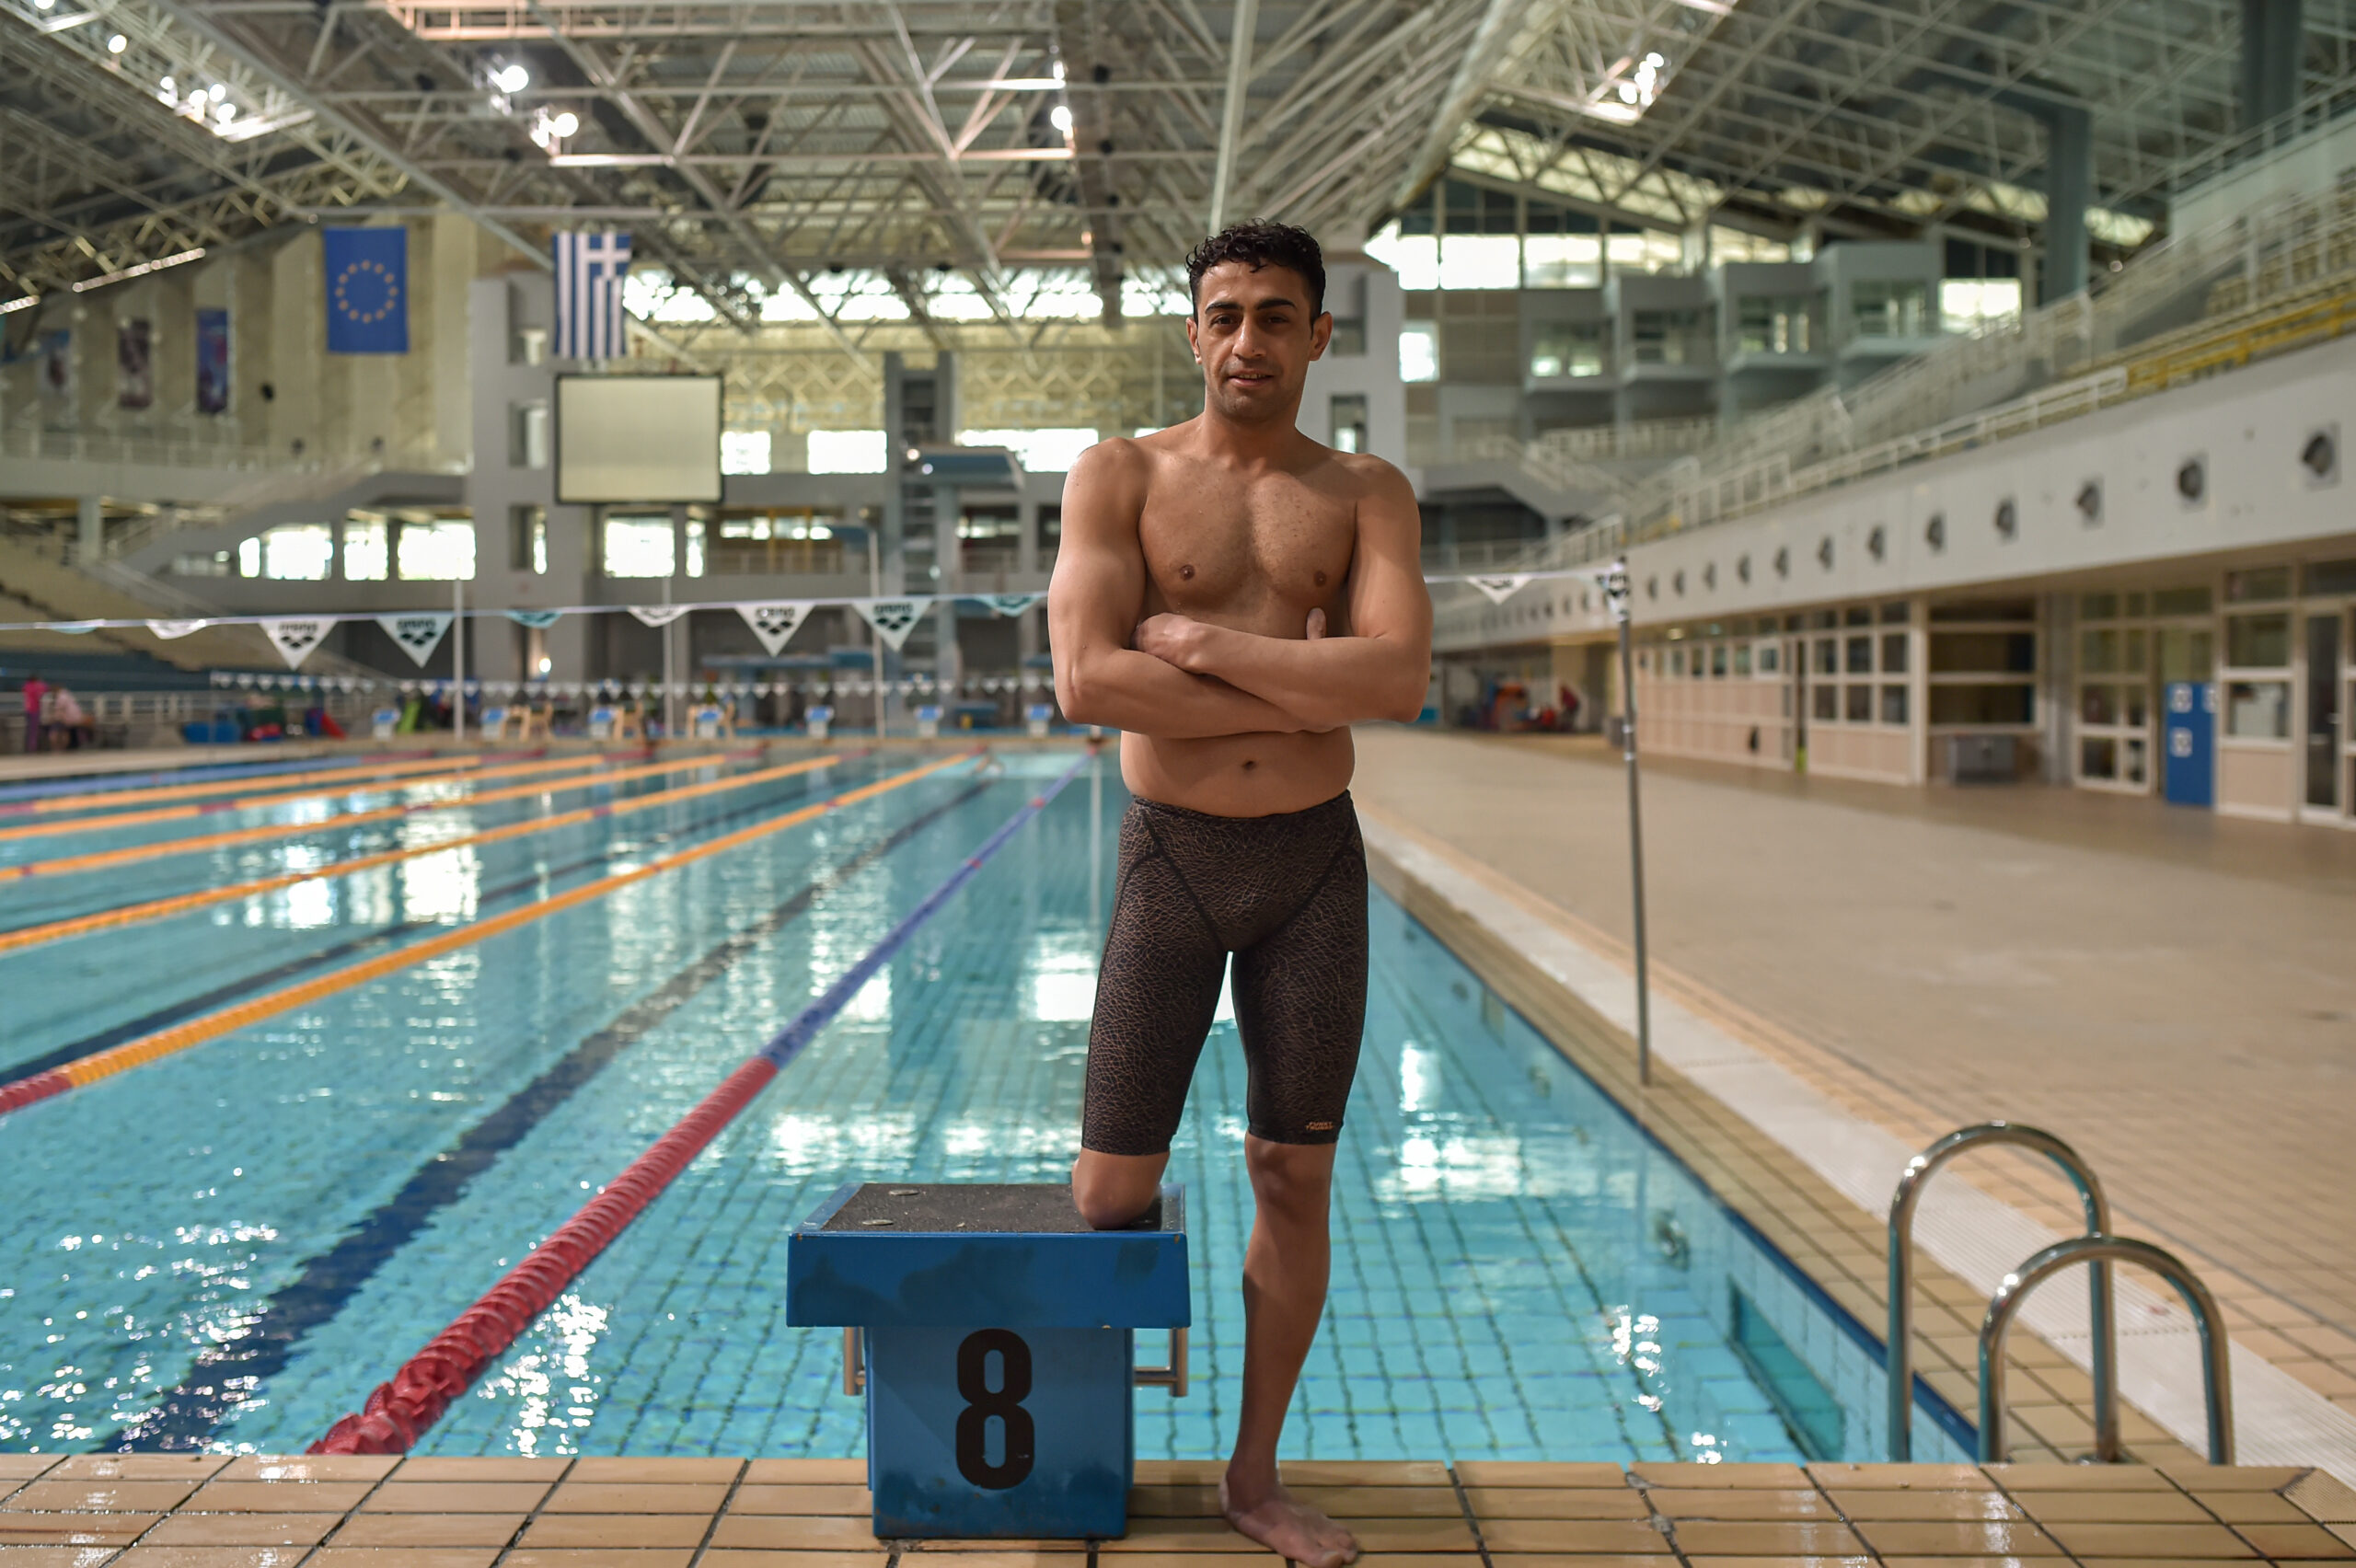 Le réfugié syrien Ibrahim Al Hussein pendant son entraînement de natation en Grèce. © Getty Images / Milos Bicanski